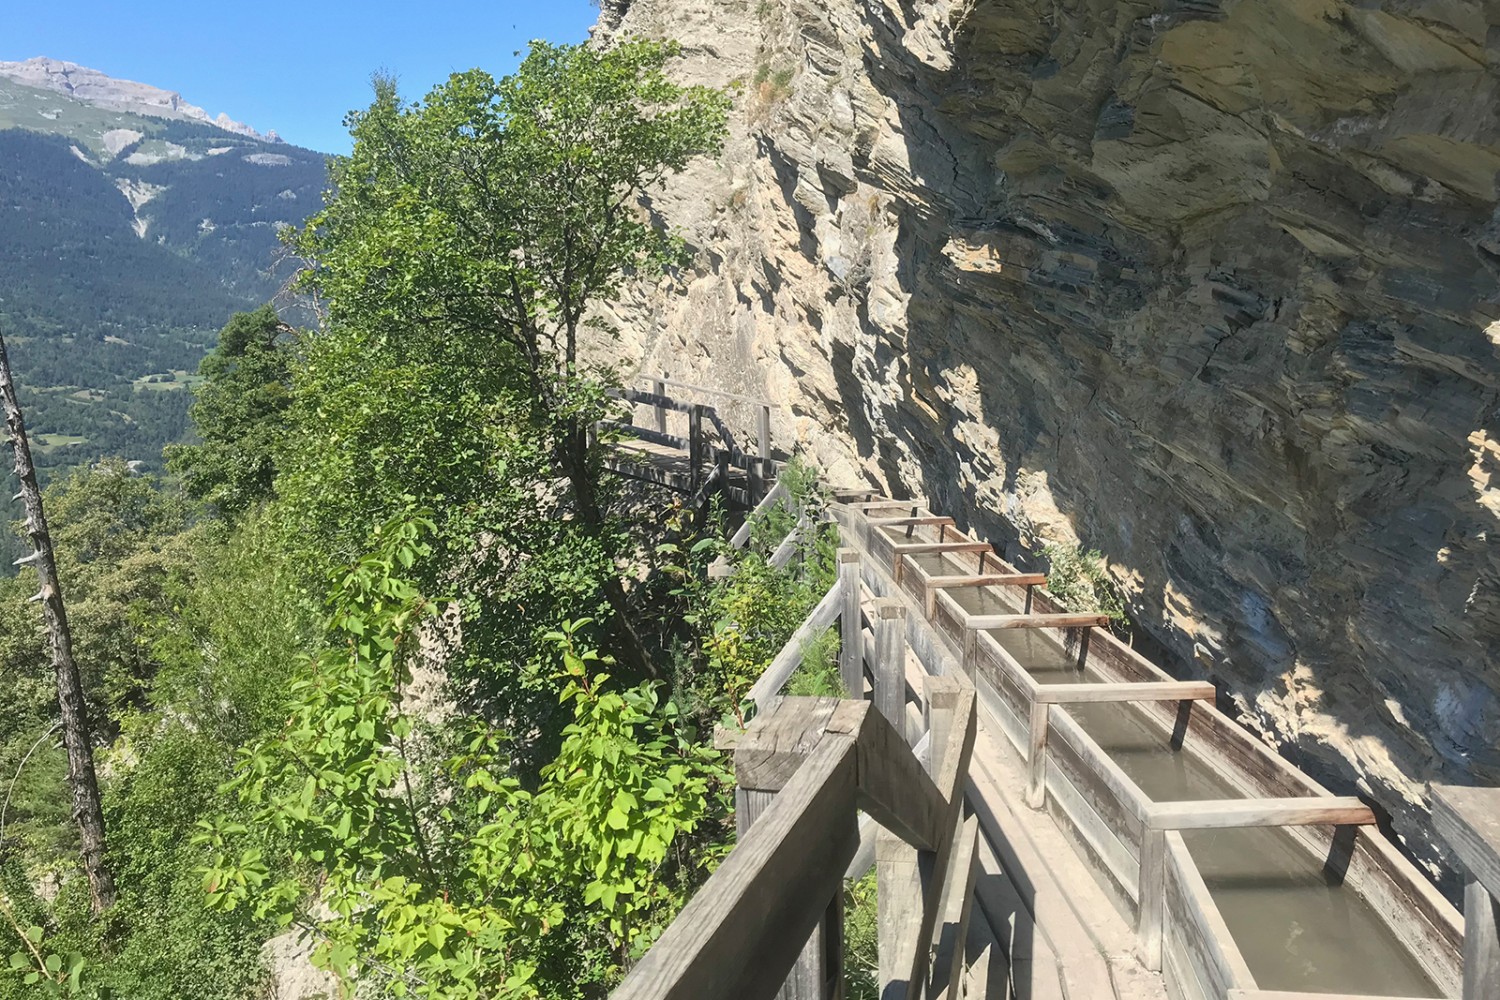 Presso il Revers du Châtelard la conduttura idrica e il sentiero sono sospesi in modo spettacolare nella parete rocciosa verticale.